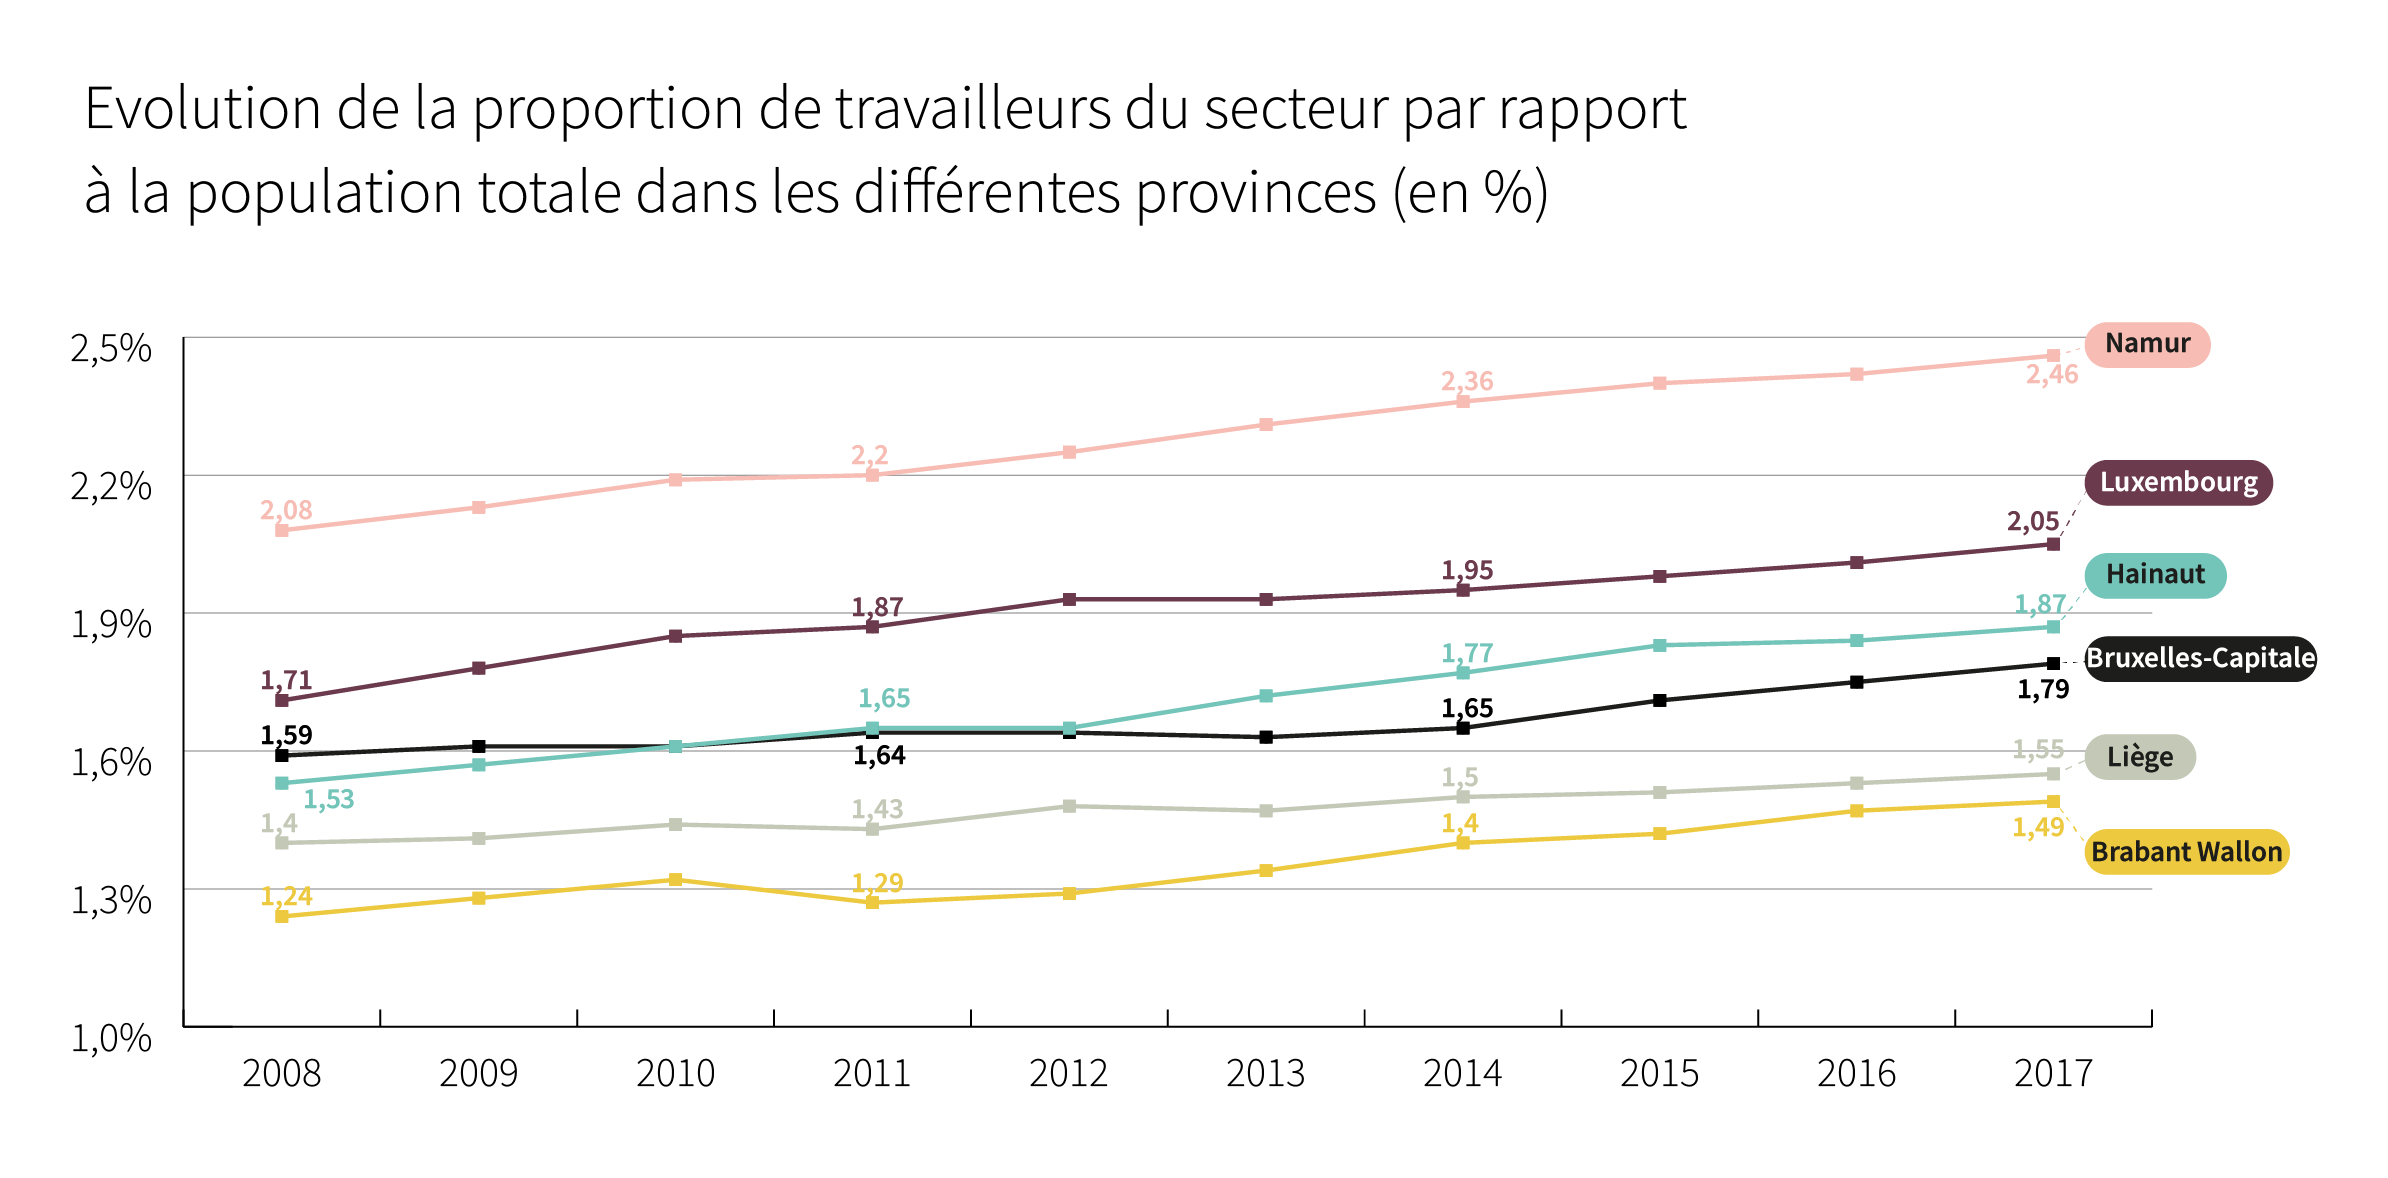 Evolution de la proportion de travailleurs du secteur par rapport à la population totale dans les différentes provinces (en %) - Cliquez pour agrandir